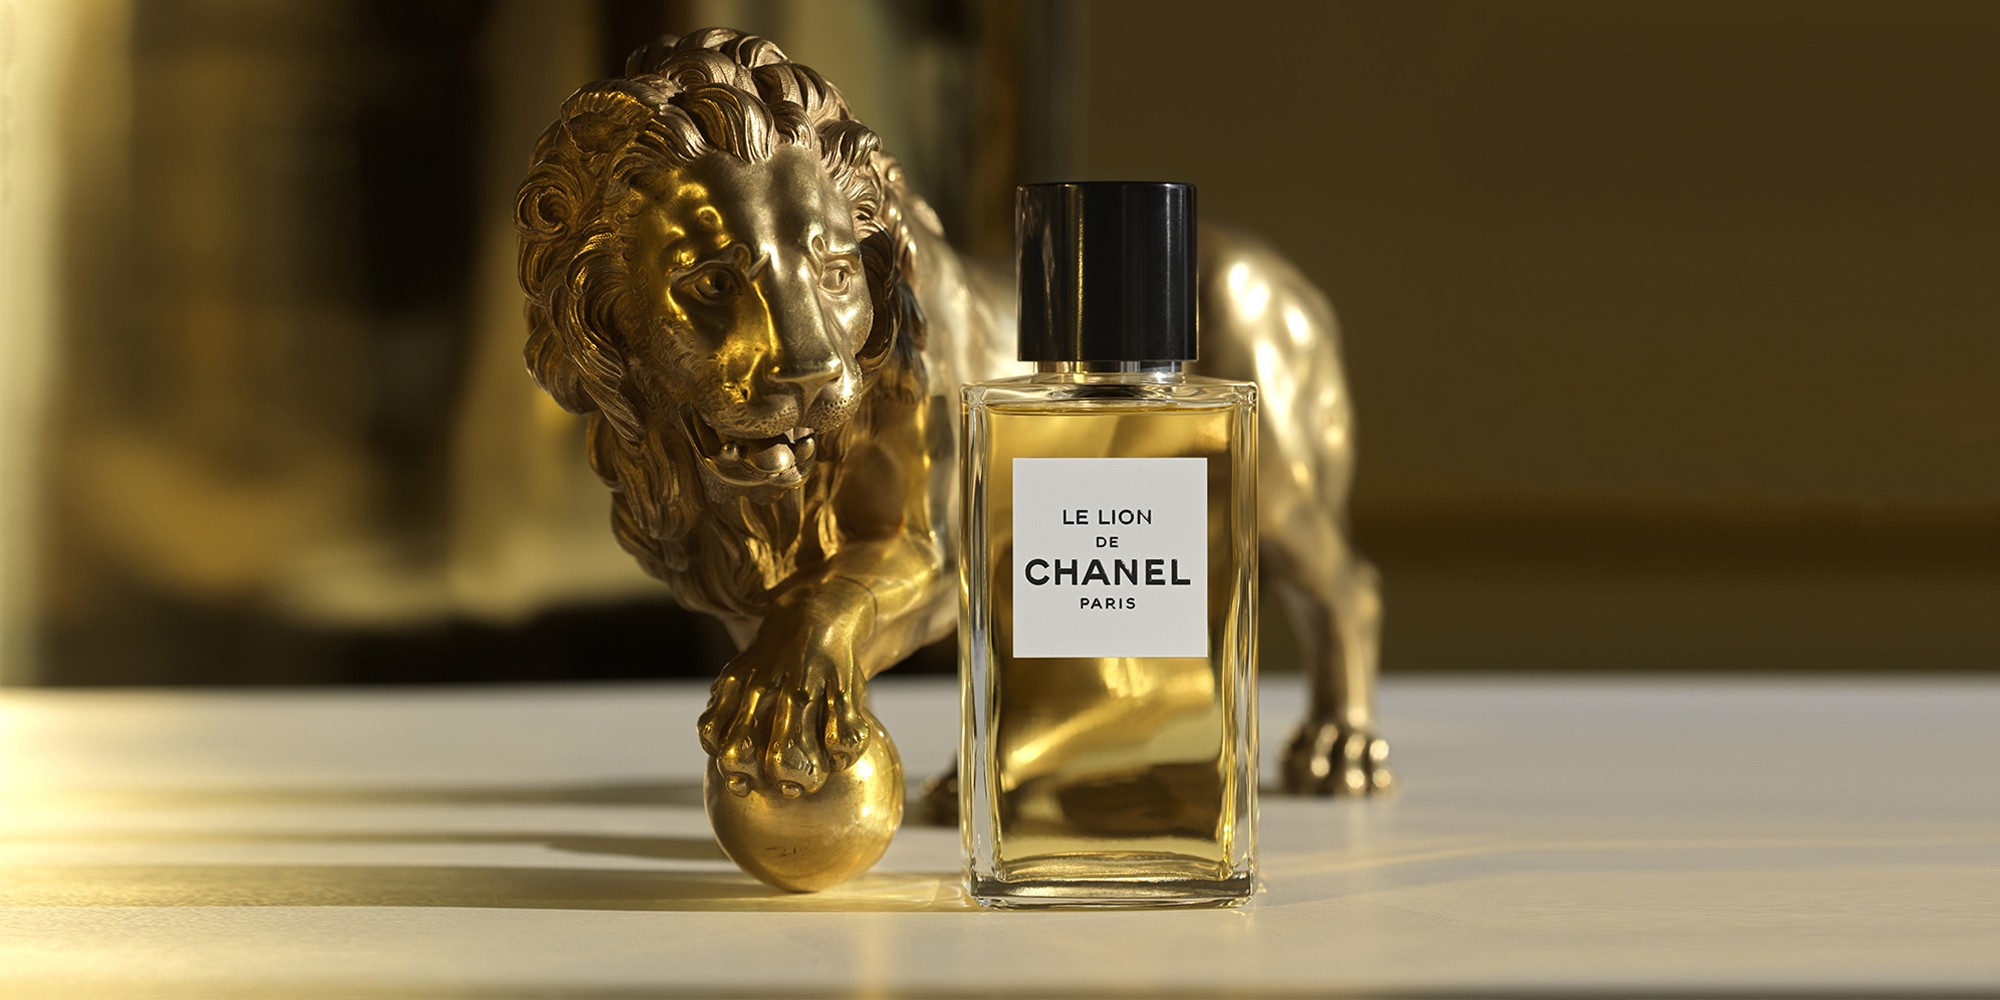 Chanel Le Lion de Chanel Fragrance | LES FAÇONS